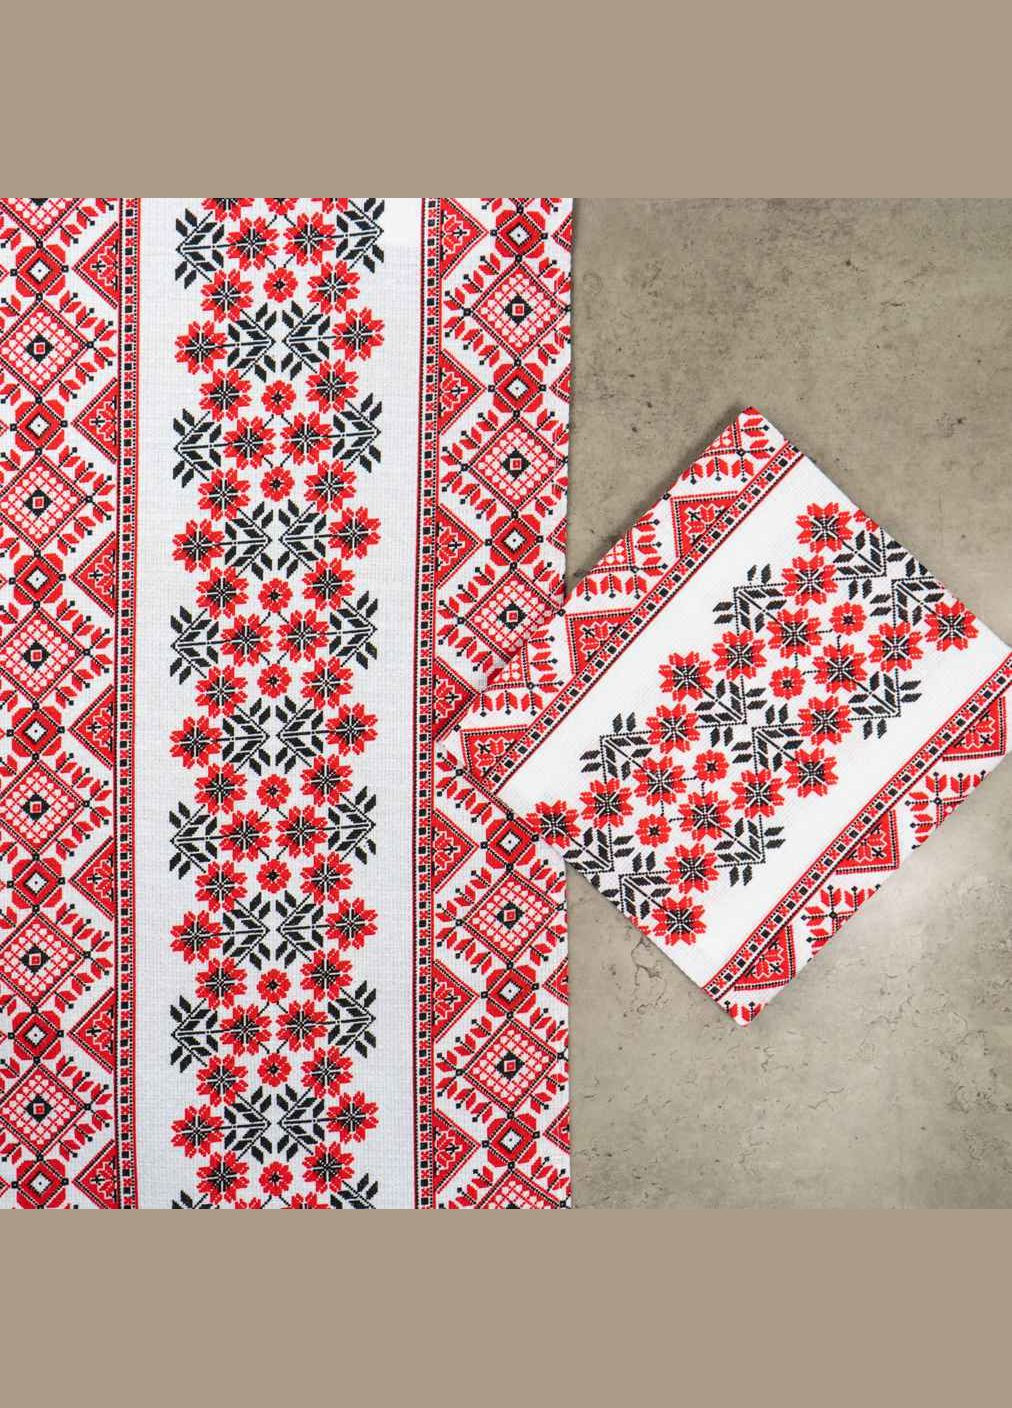 GM Textile рушник вафельний з принтом вишивки та червоними квітами 35х61см 180г/м2 (білочервоний) комбінований виробництво - Узбекистан